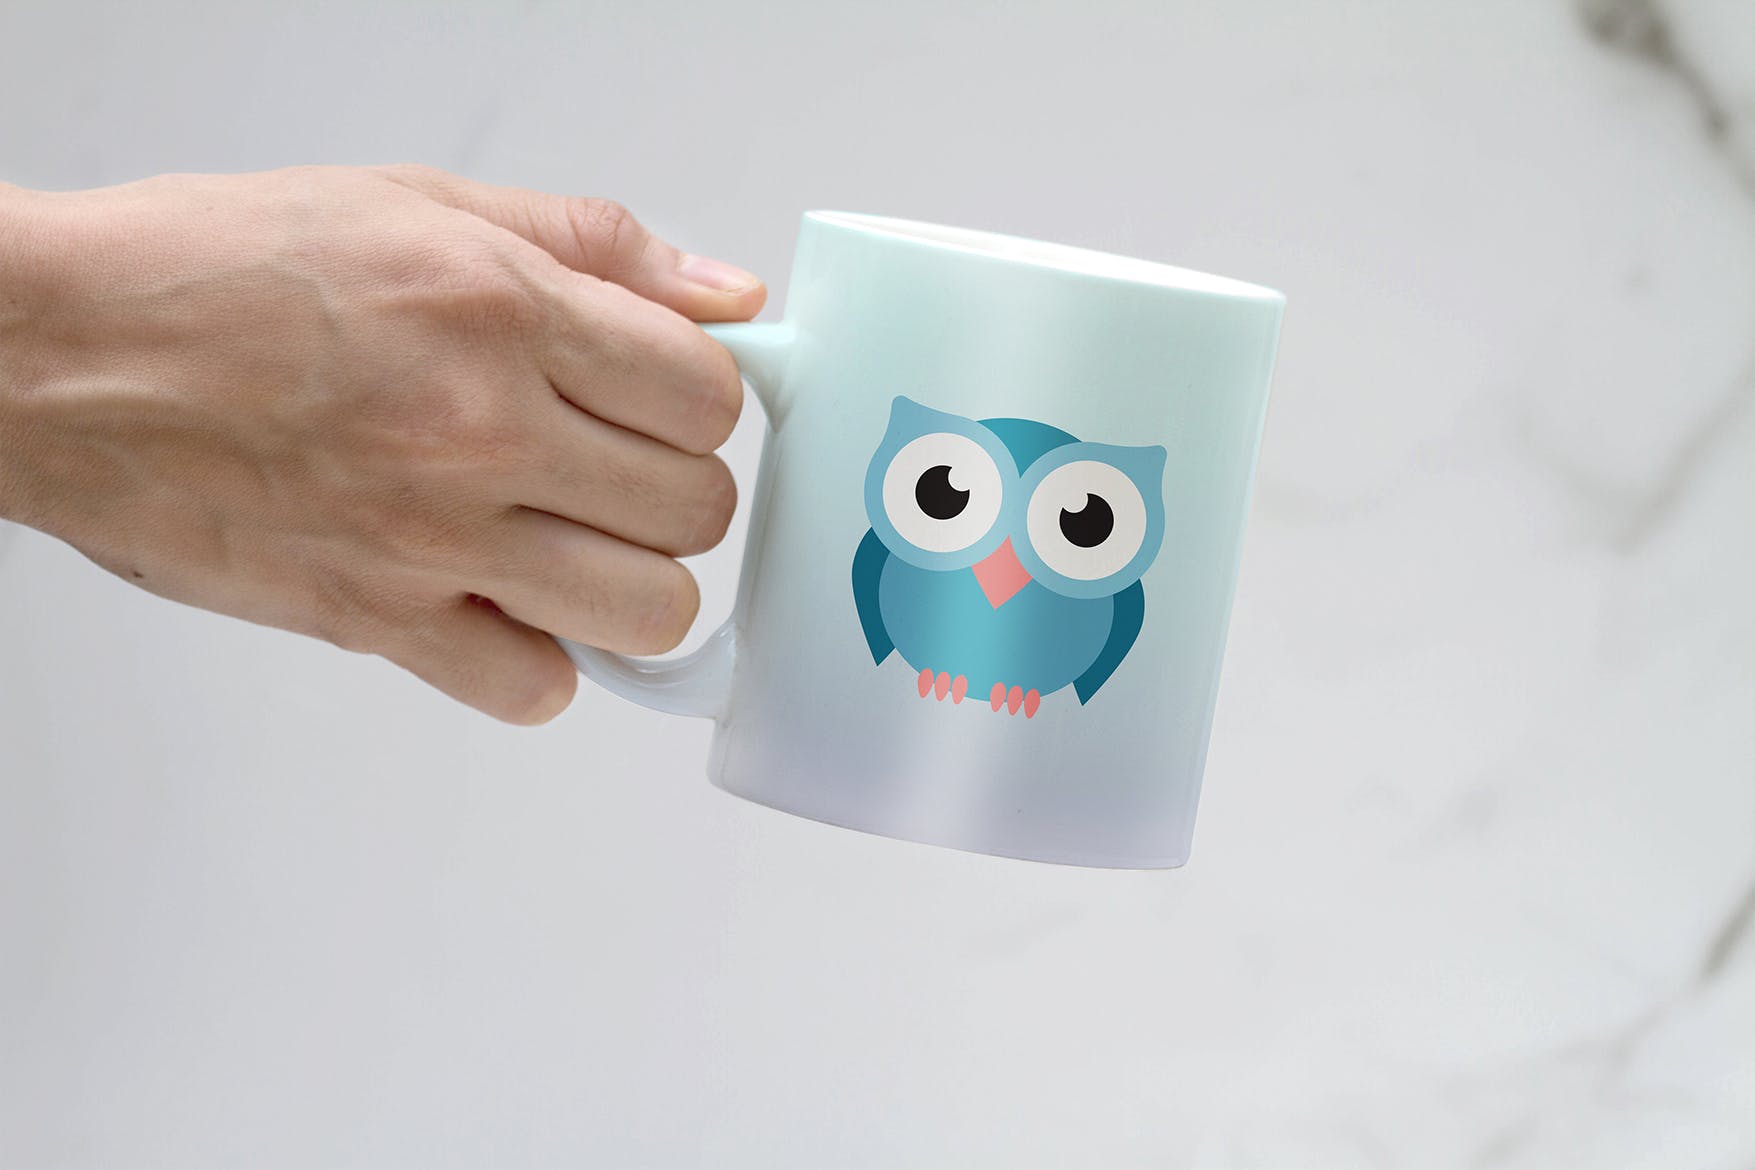 马克杯图案设计预览样机 Clean Mug Mock Up插图(1)